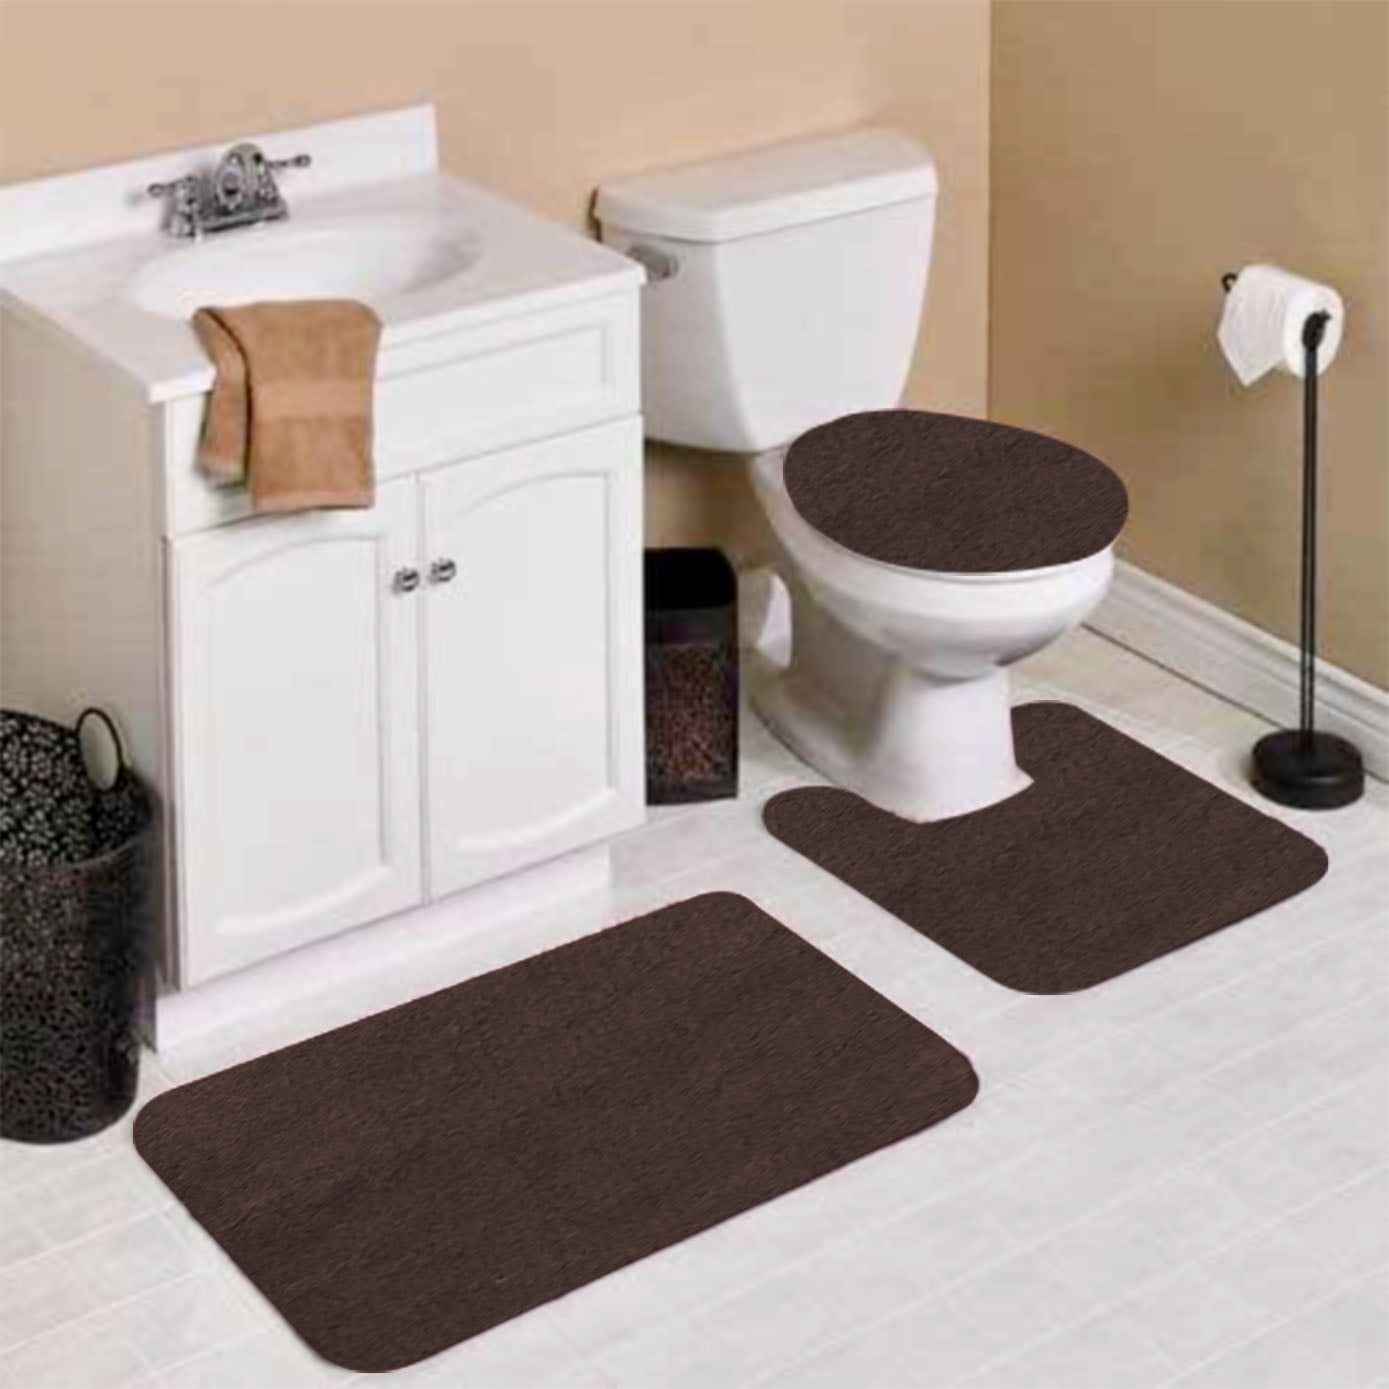 Details about   Bathroom Non-Slip Base Carpet Bathroom Mat Showe Lid Toilet Cover 